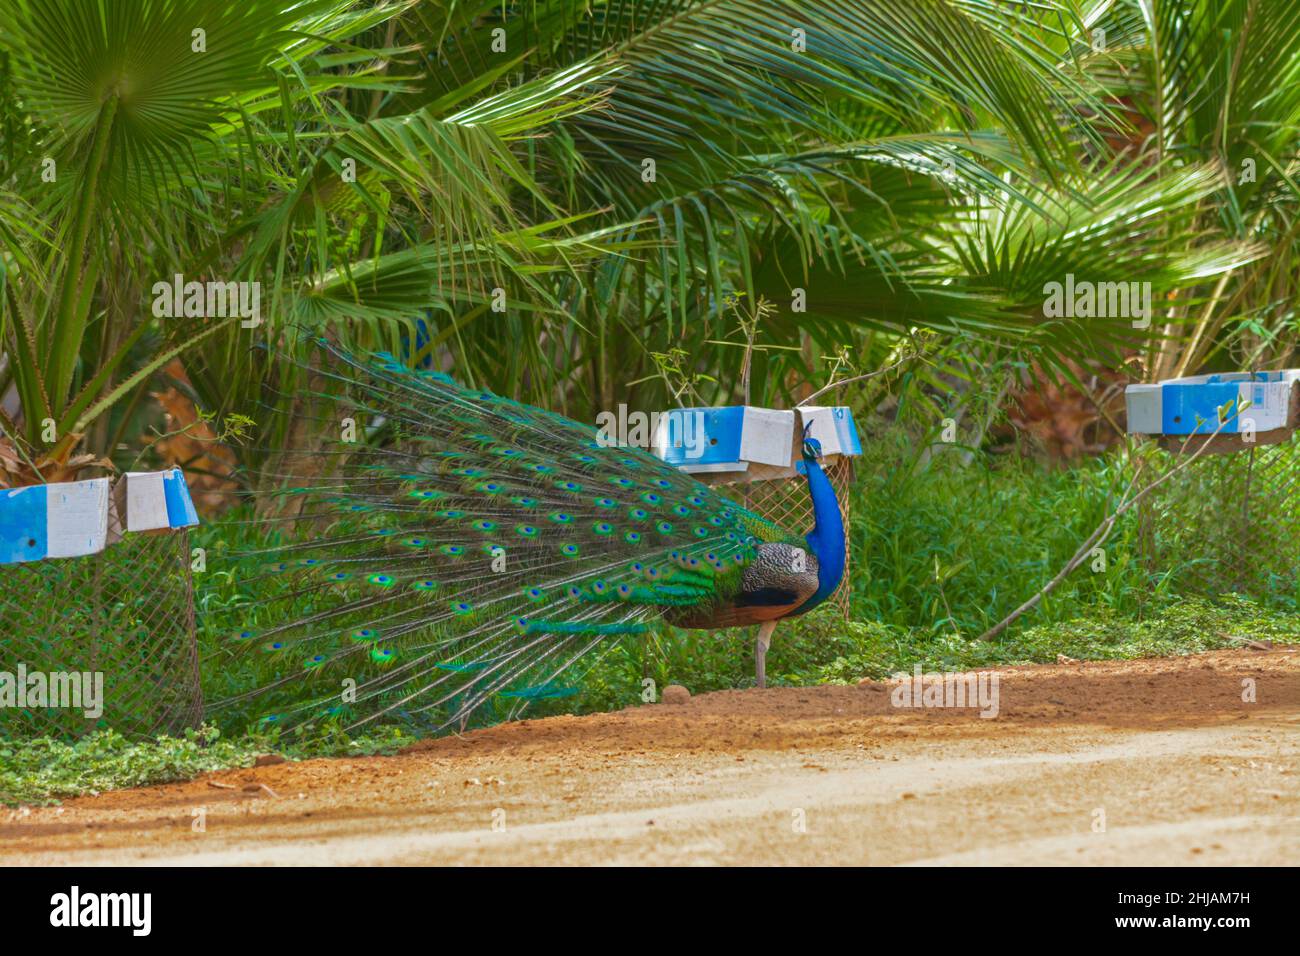 Dancing peacock Stock Photo